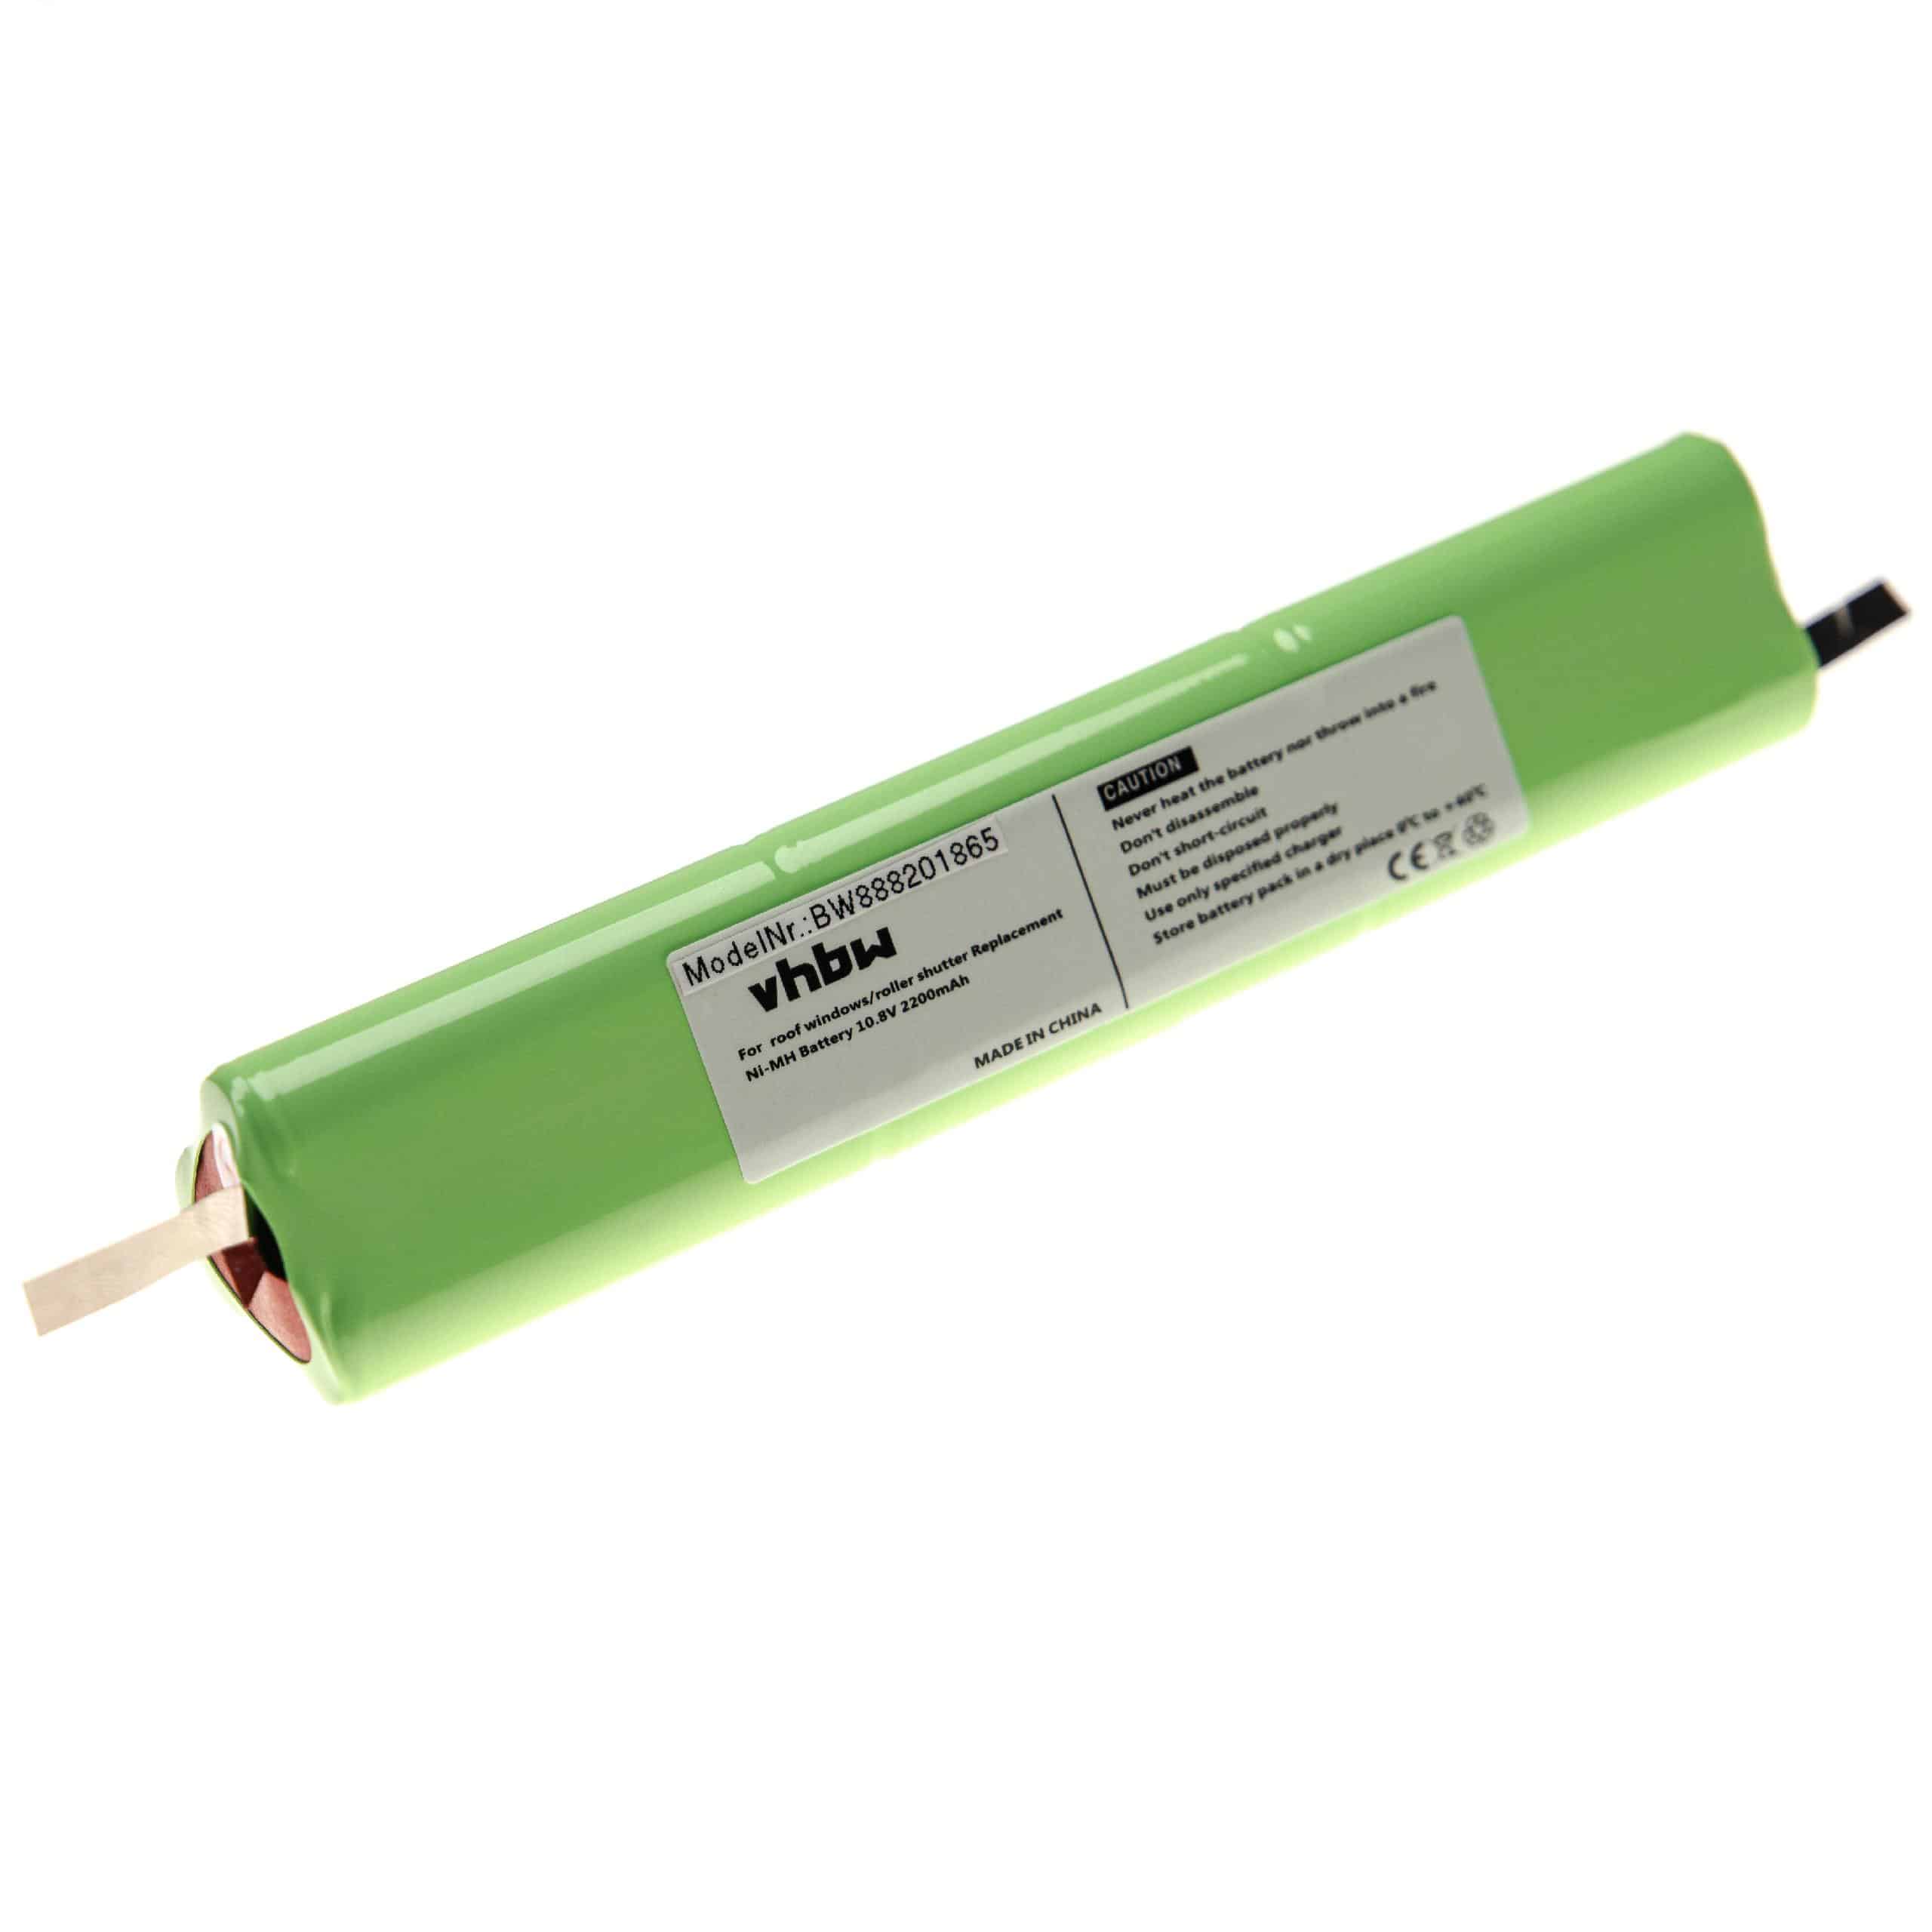 Batterie remplace Velux 946933, 946930 pour store volet de fenêtre - 2200mAh 10,8V NiMH